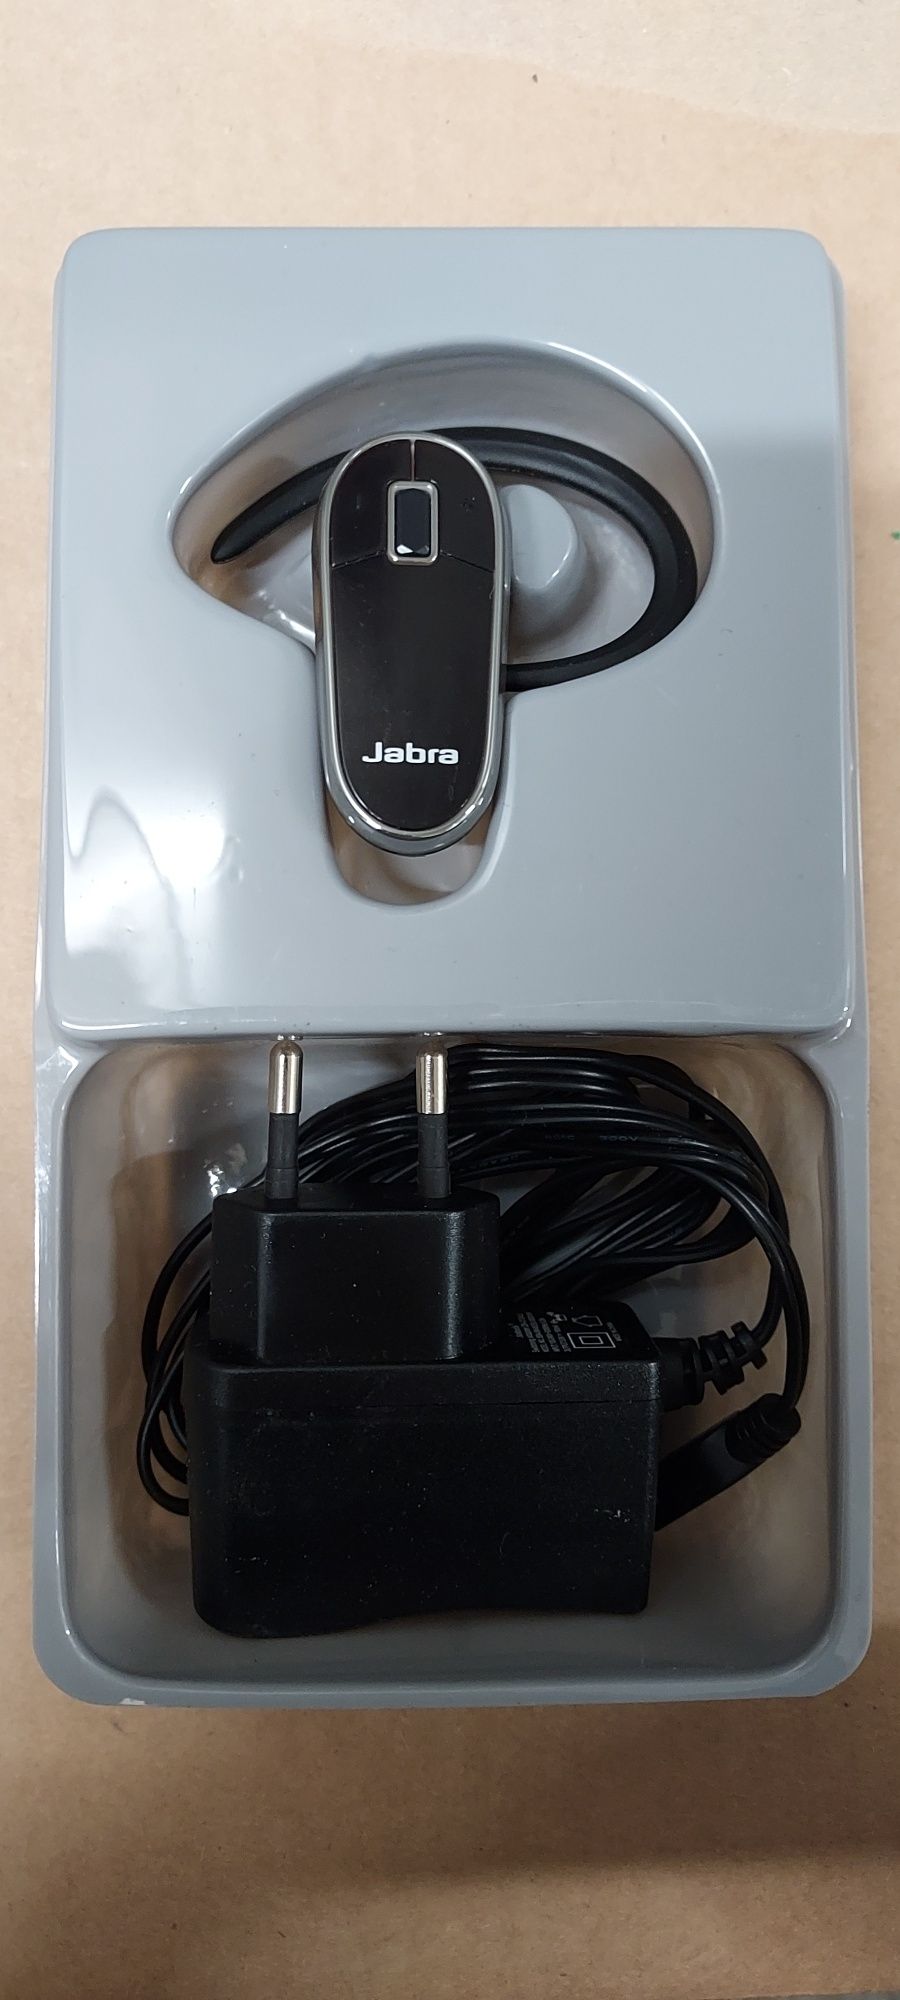 Słuchawka bluetooth Jabra BT2010 - uwolnij ręce od telefonu!